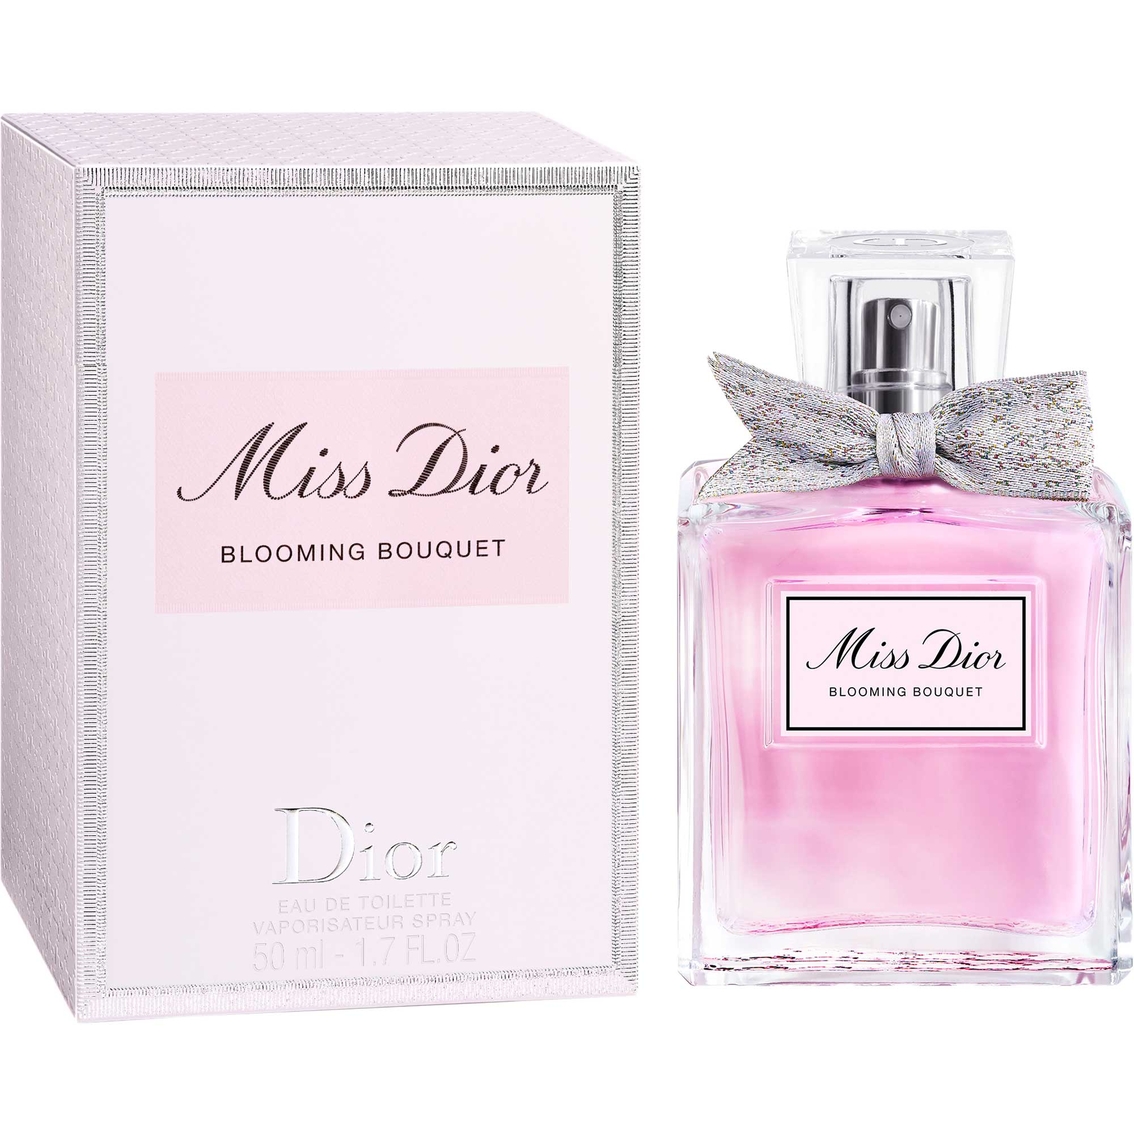 Dior Miss Dior Blooming Bouquet Eau de Toilette - Image 2 of 3